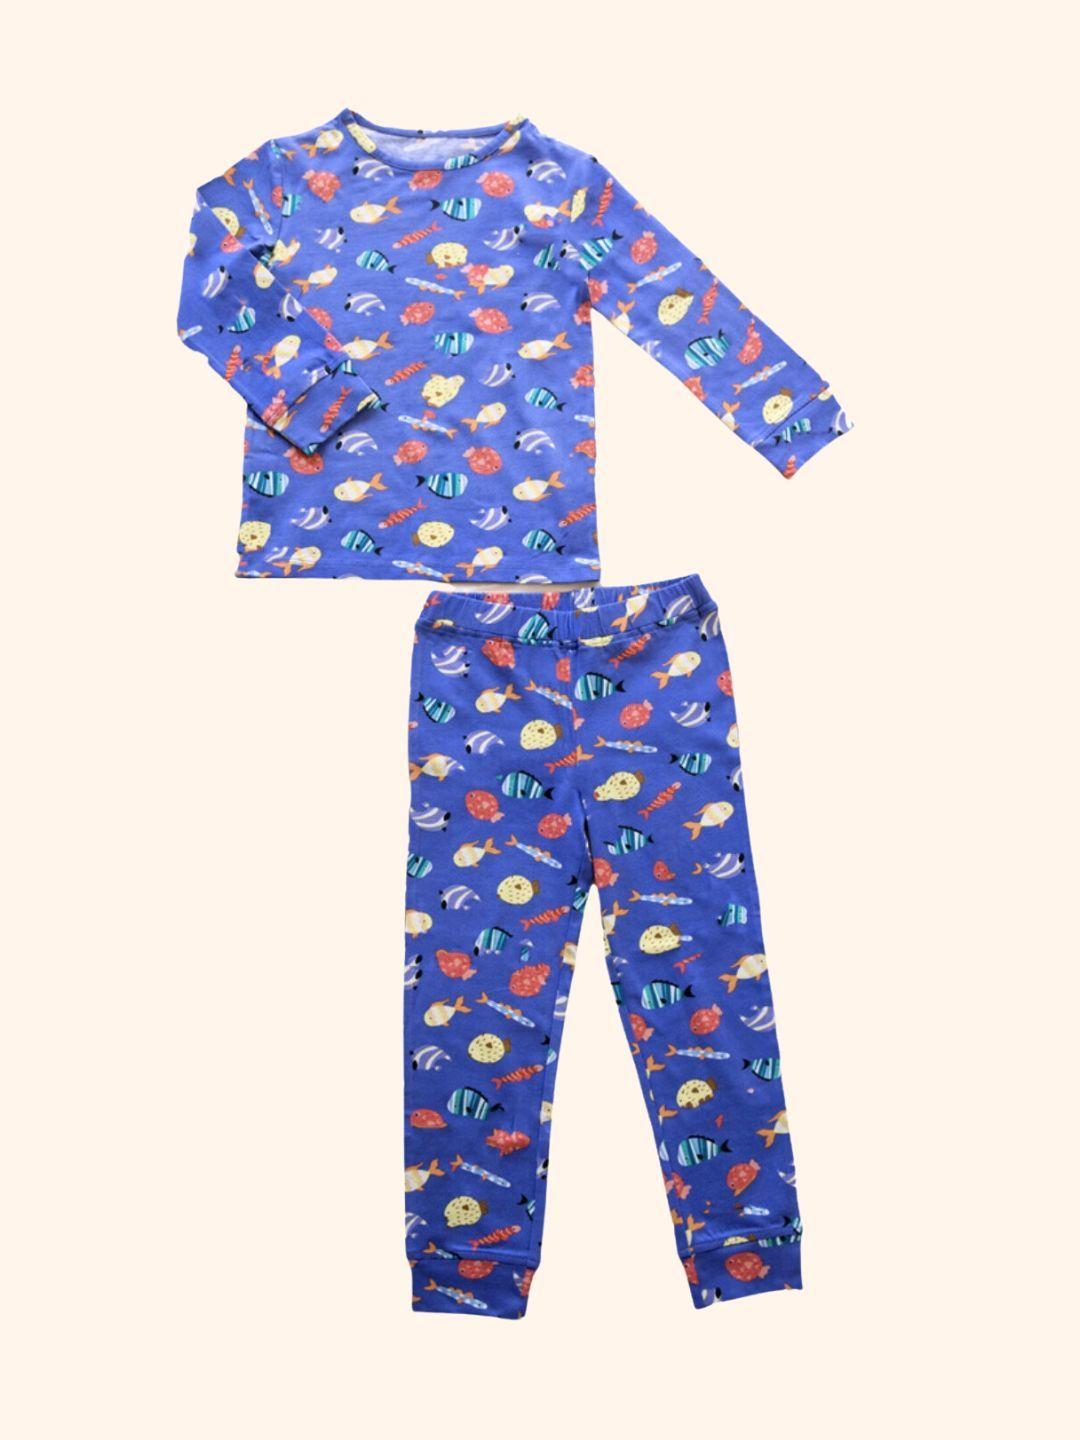 ola! otter unisex kids blue printed night suit